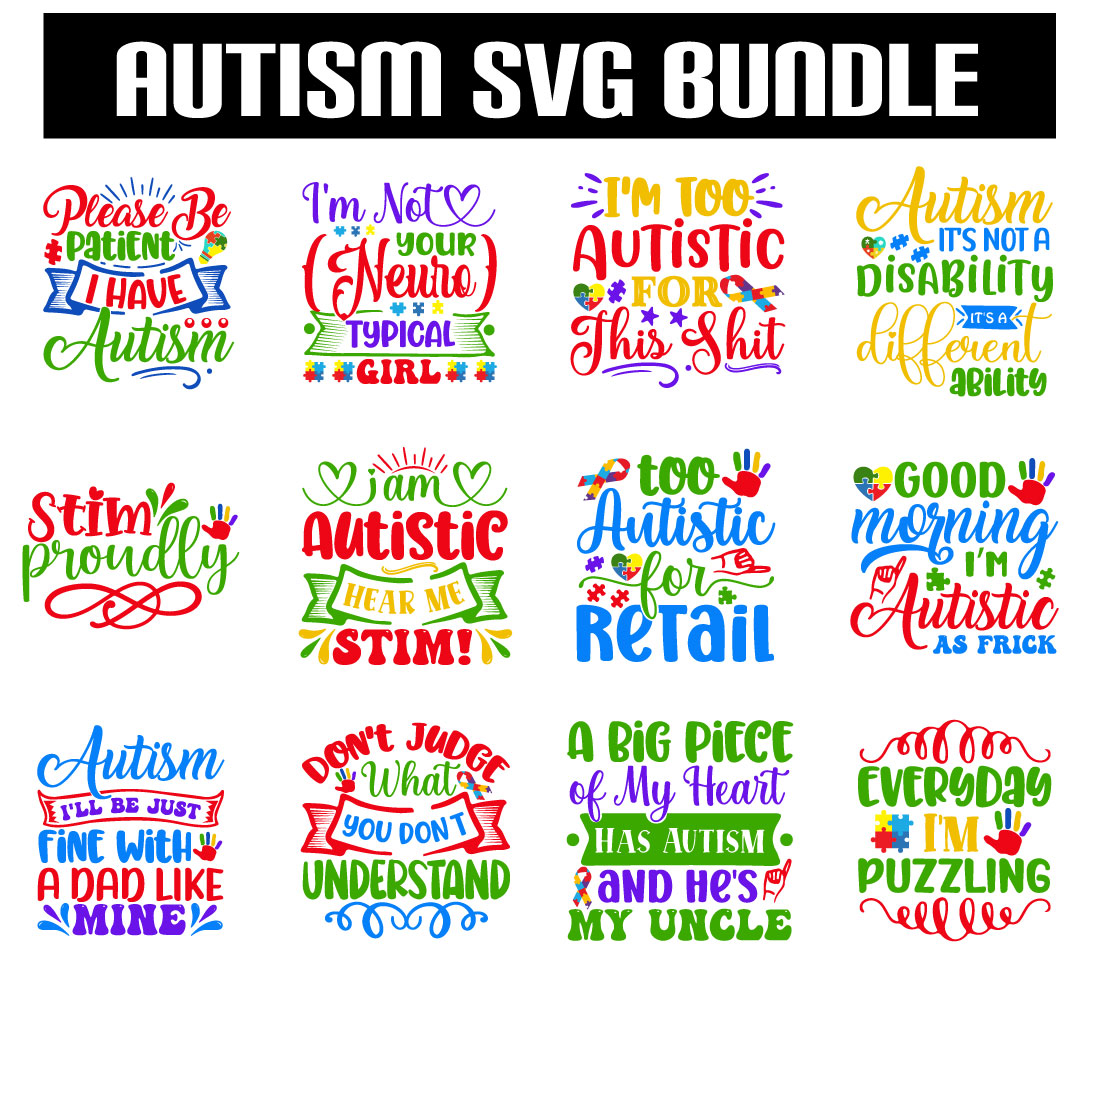 Autism Svg Bundle cover image.